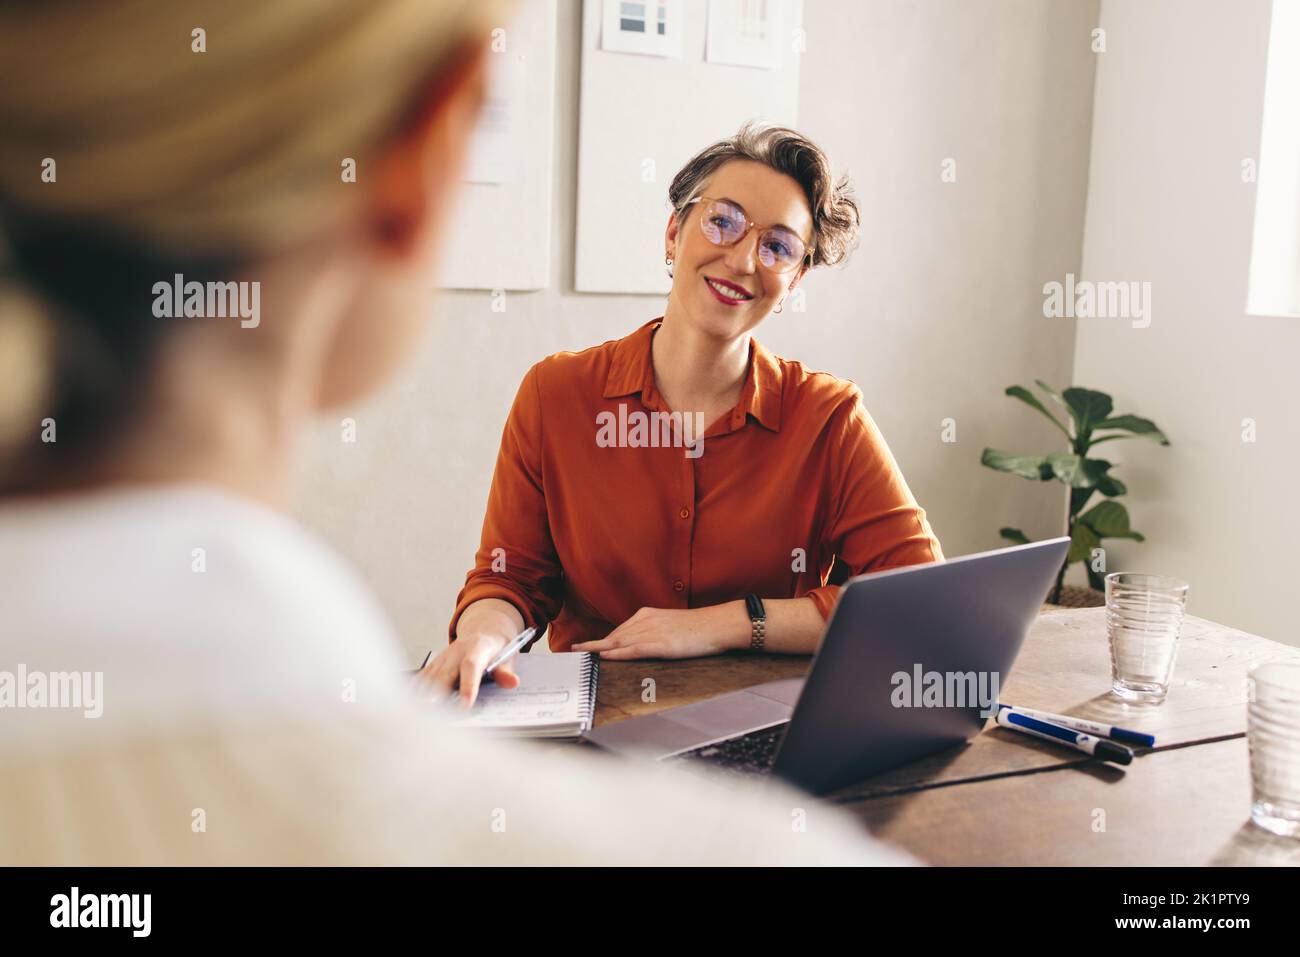 Heureux gestionnaire d'embauche souriant tout en interviewant un candidat à l'emploi dans son bureau. Femme d'affaires gaie ayant une réunion avec un bricheliste d'applican d'emploi Banque D'Images